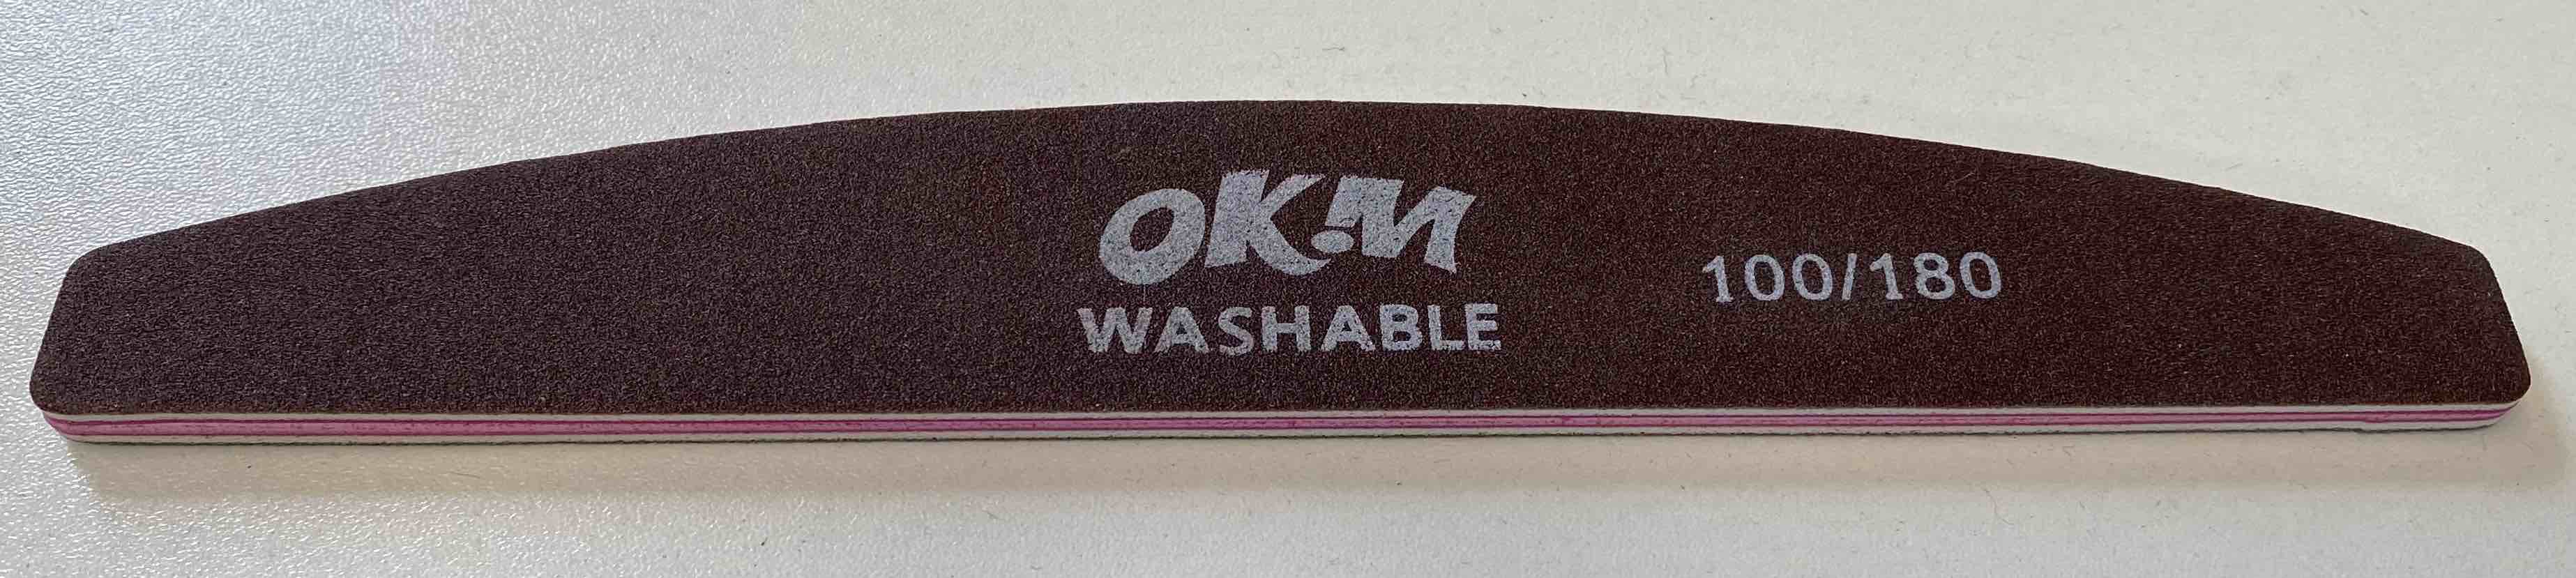 OKM Washable Files 100/180